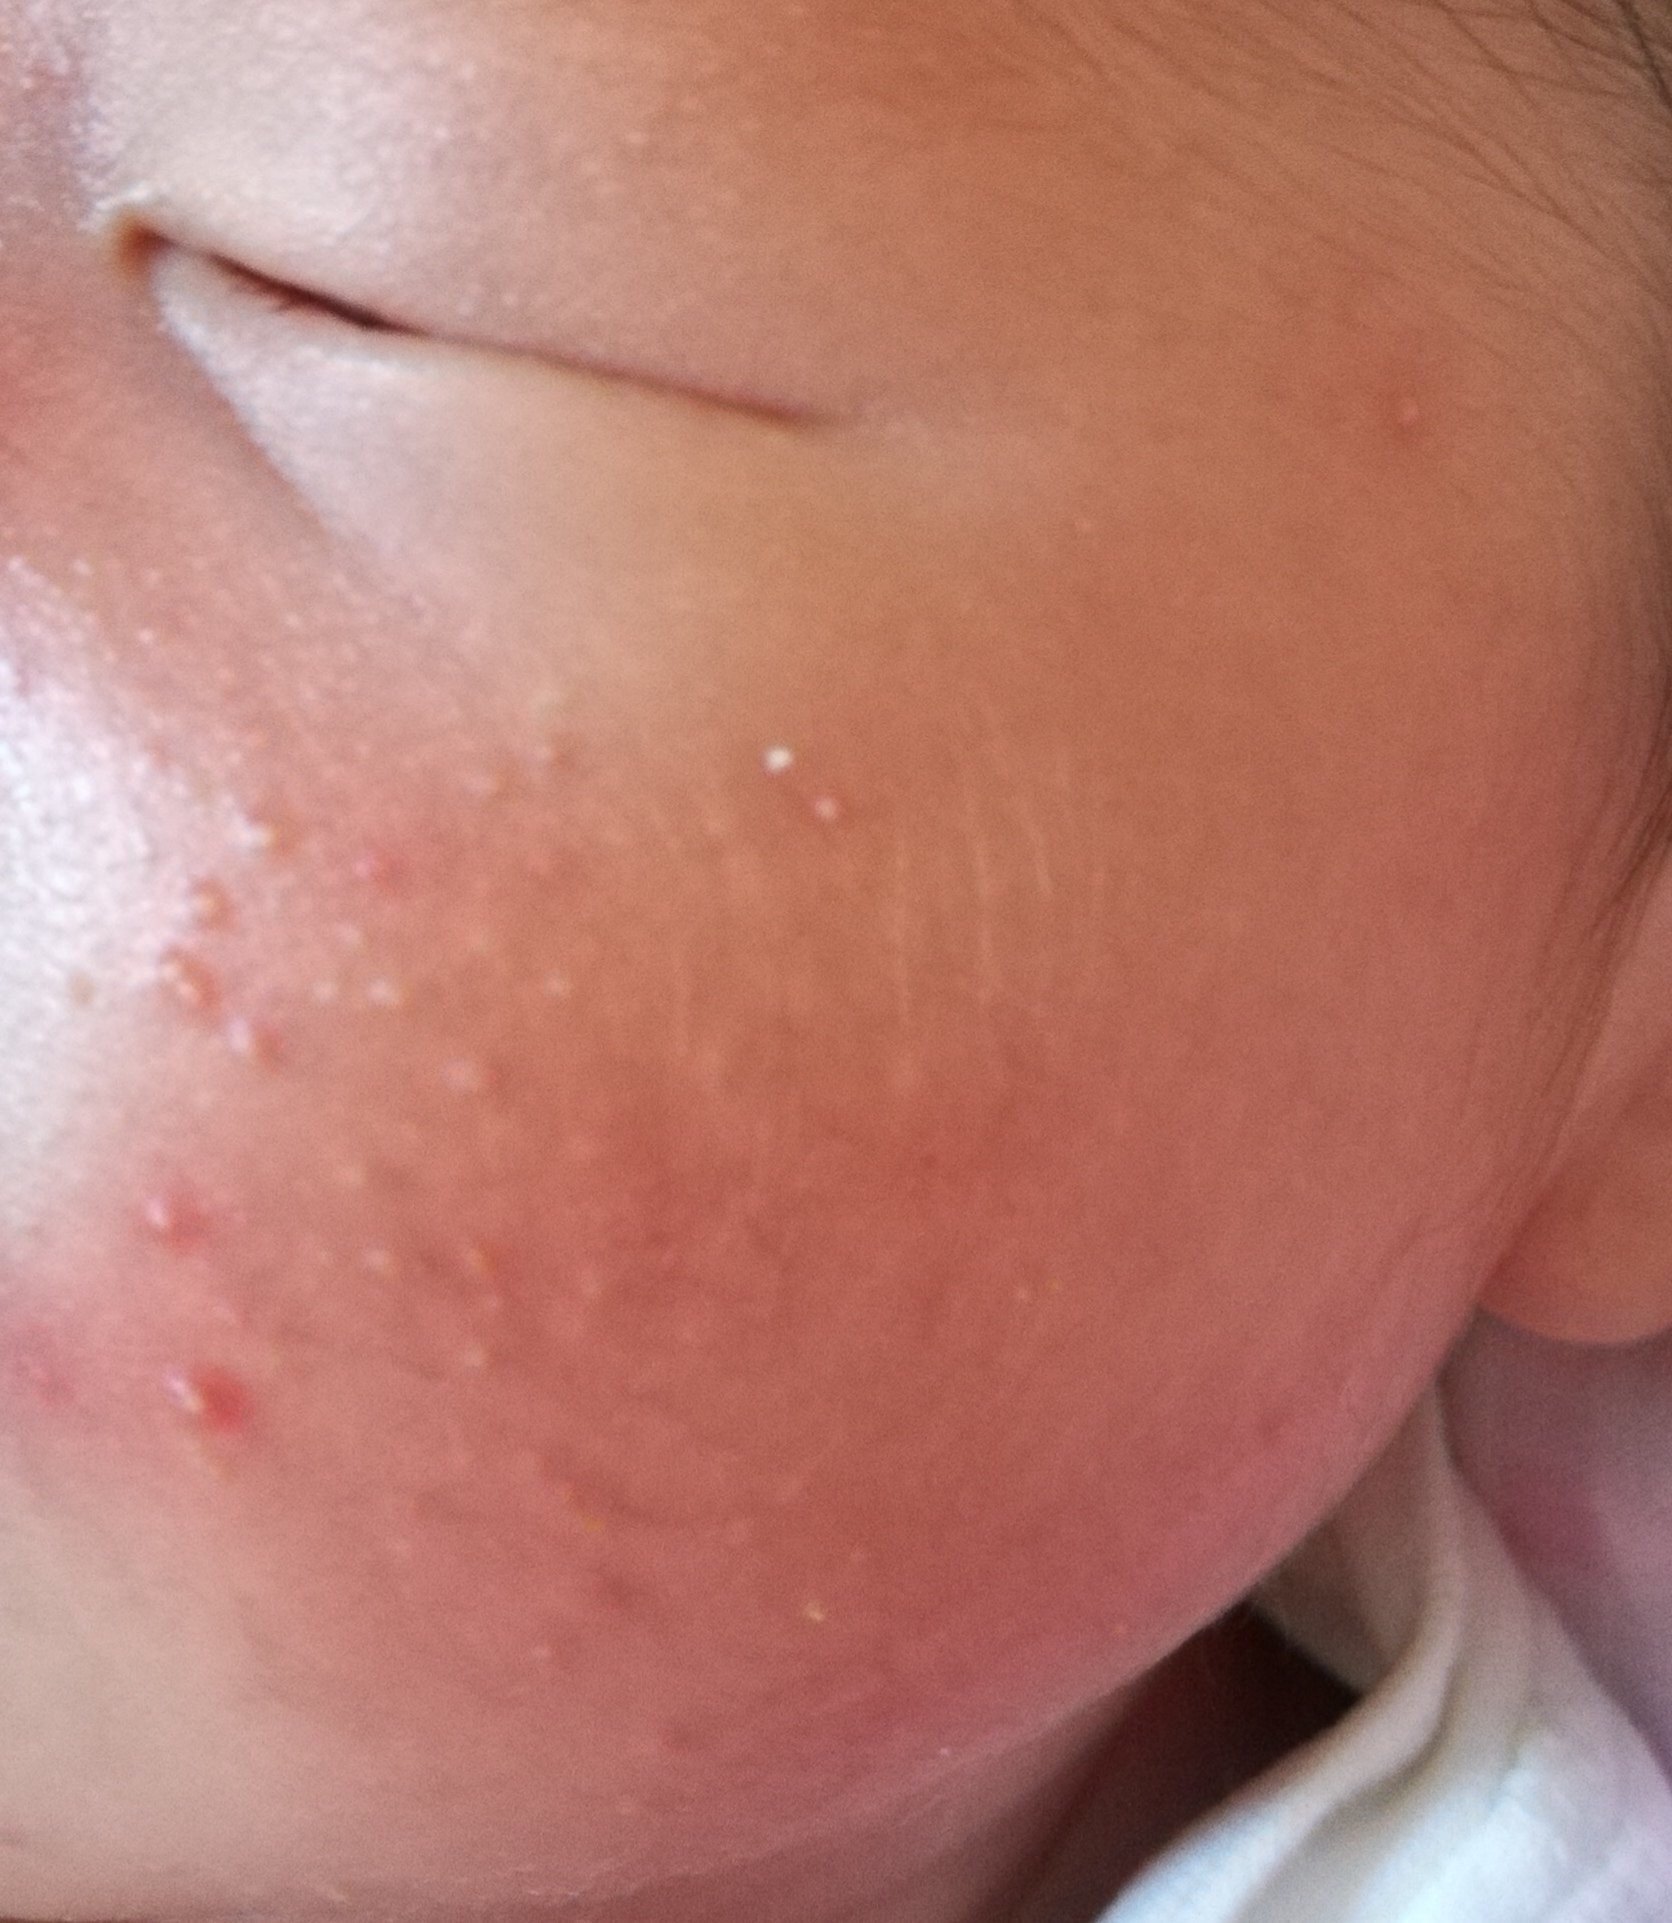 婴儿湿疹虽然常见,但要注意区分【新生儿痤疮/婴儿痤疮】  如图所示